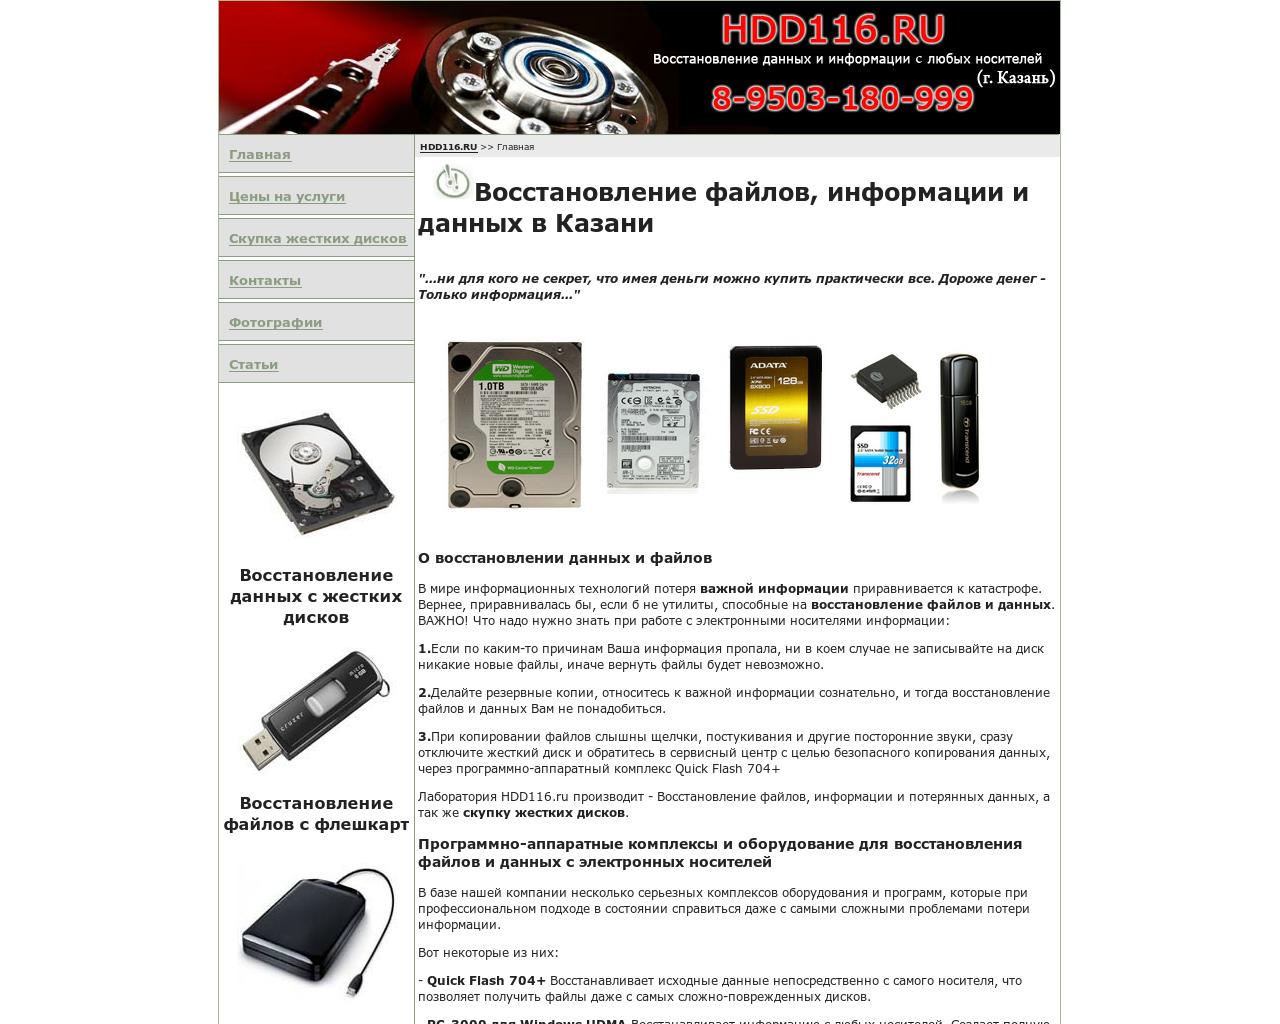 Изображение сайта hdd116.ru в разрешении 1280x1024